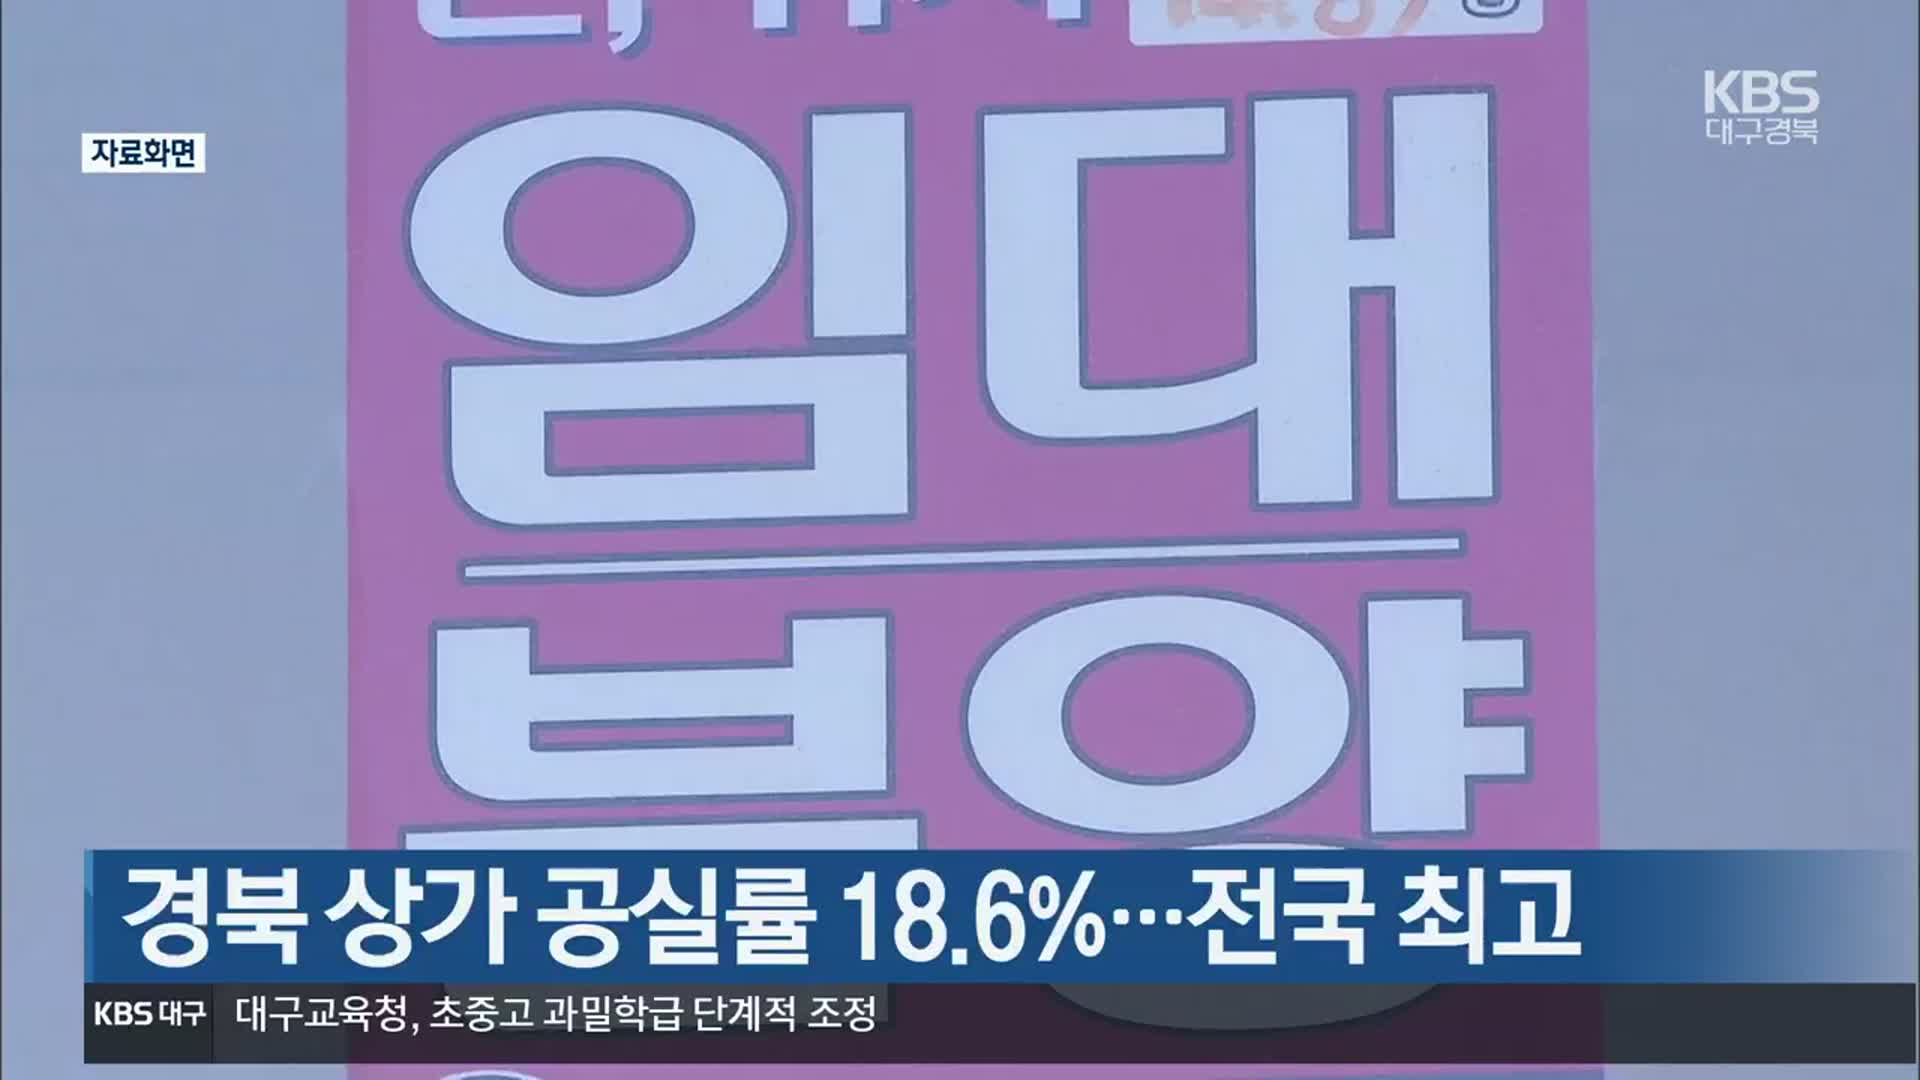 경북 상가 공실률 18.6%…전국 최고